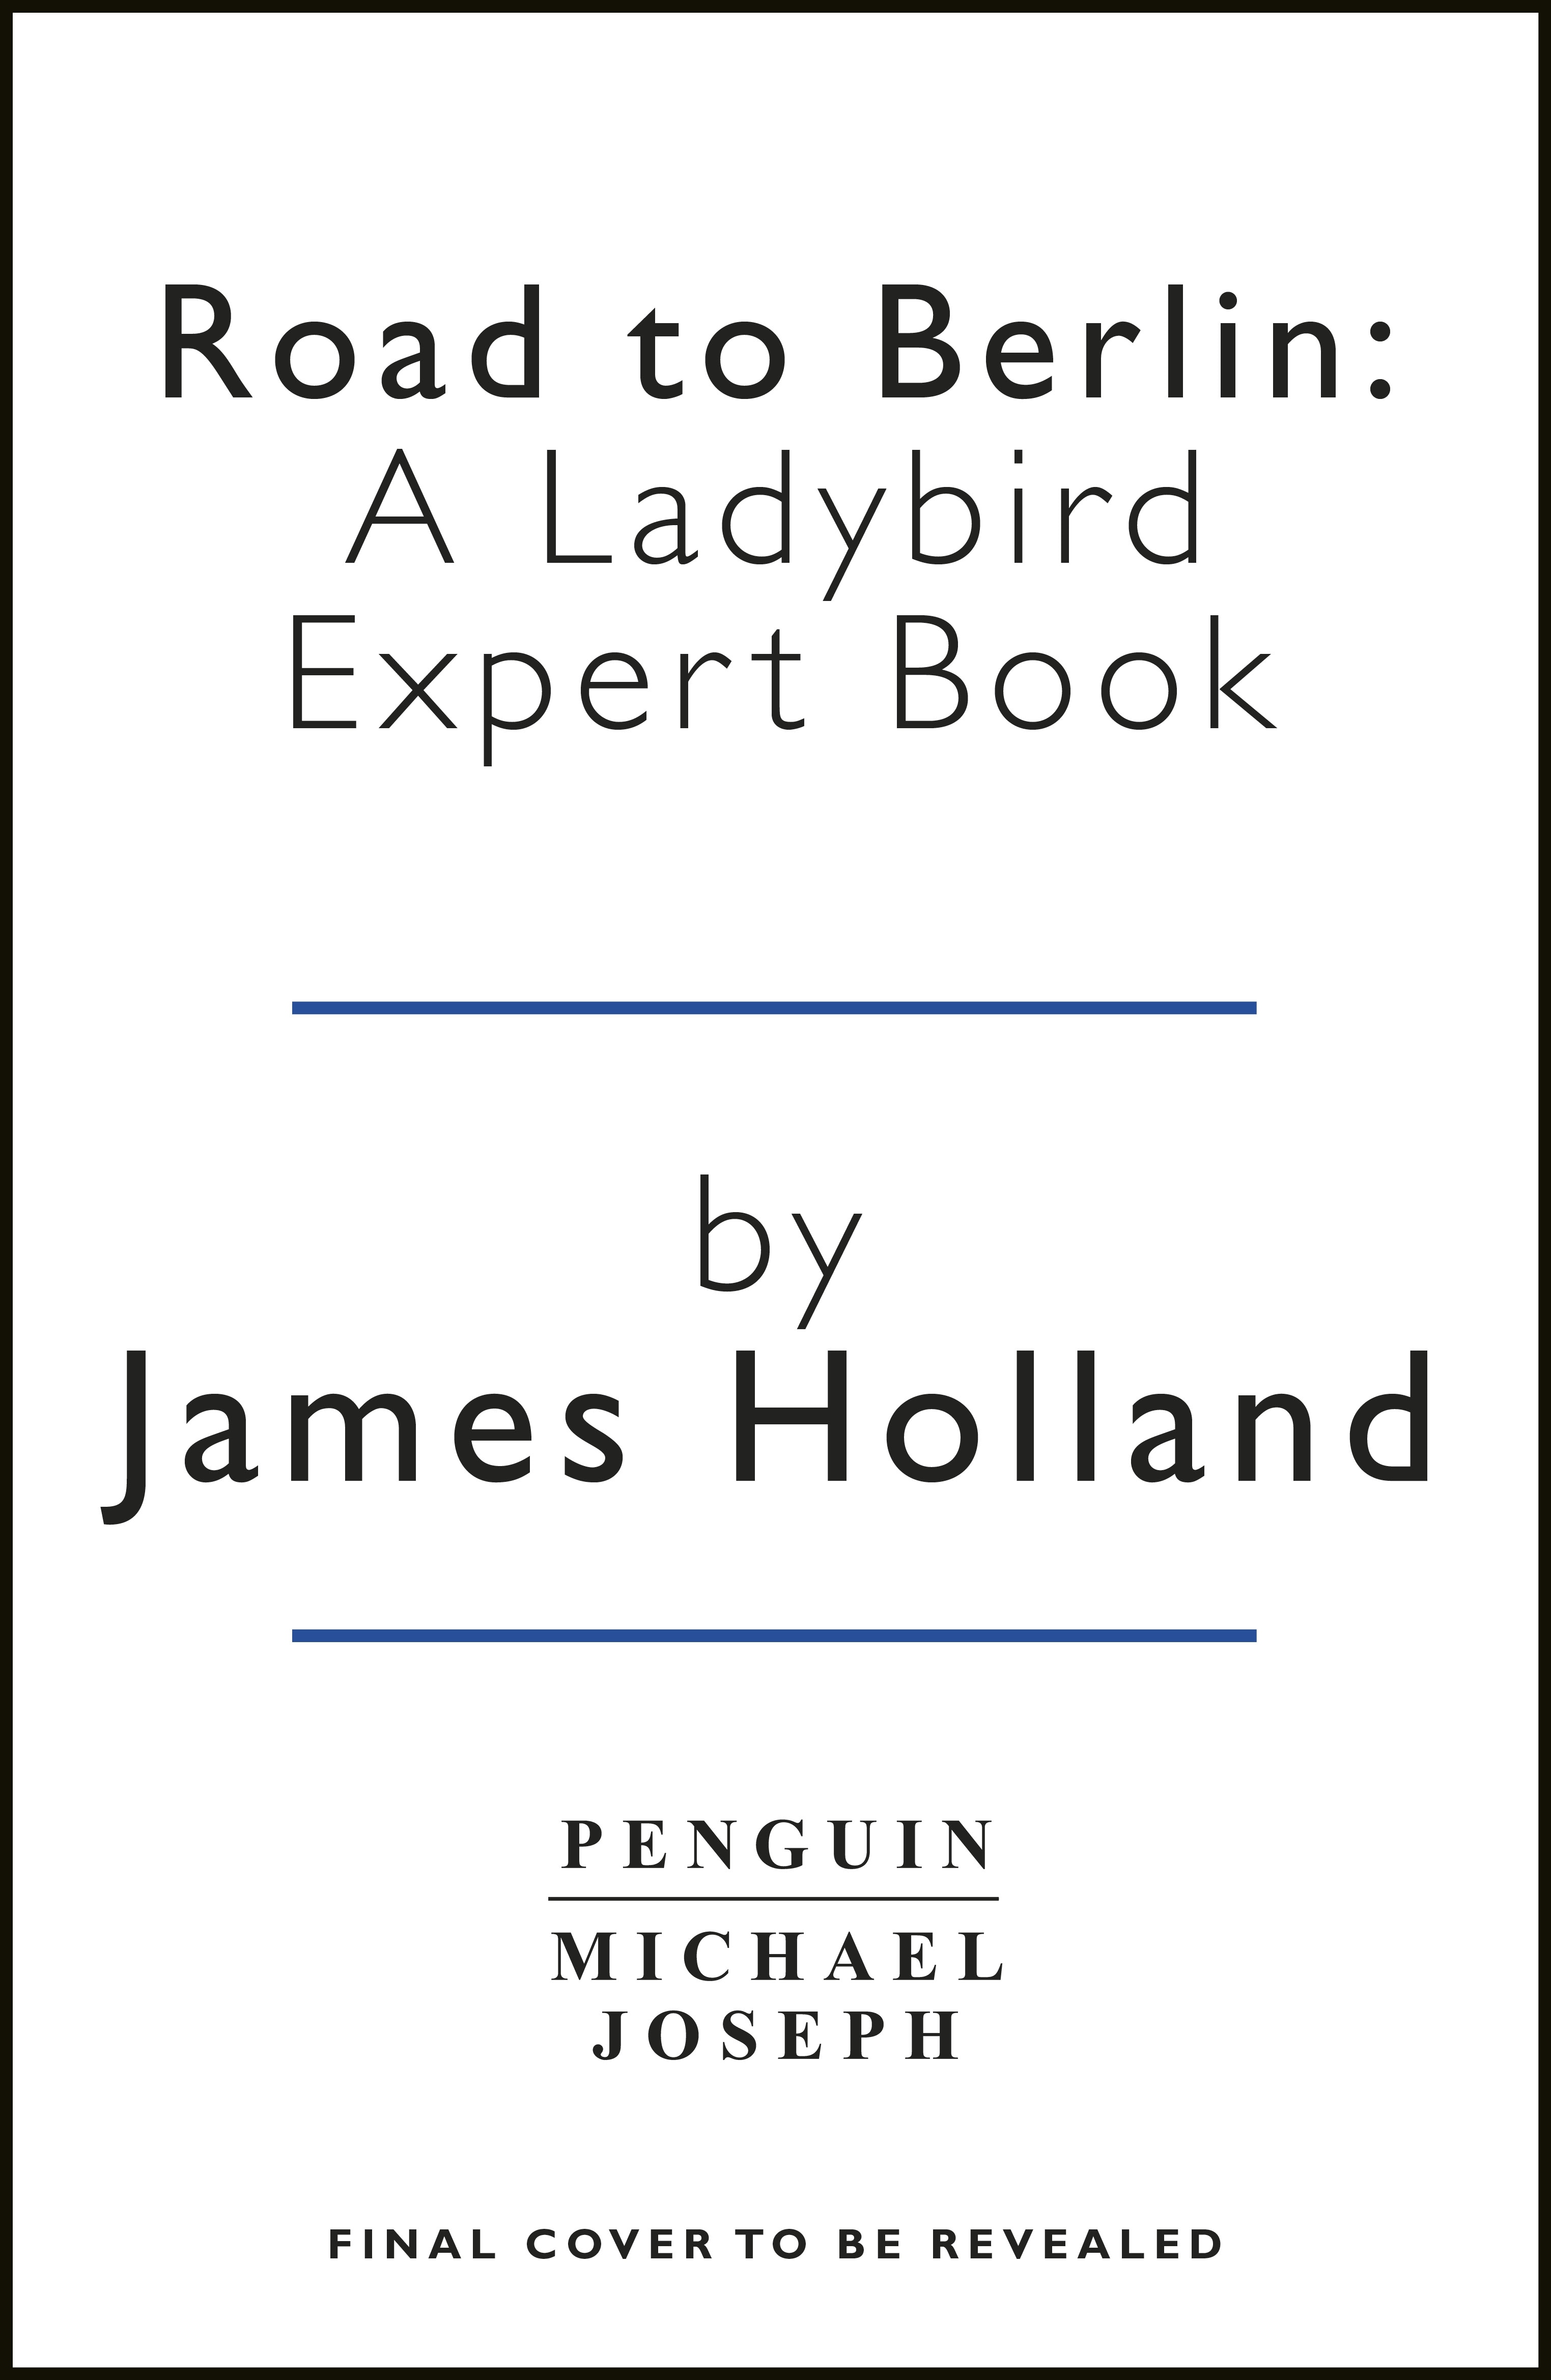 Book “Road to Berlin: A Ladybird Expert Book” by James Holland — September 1, 2022